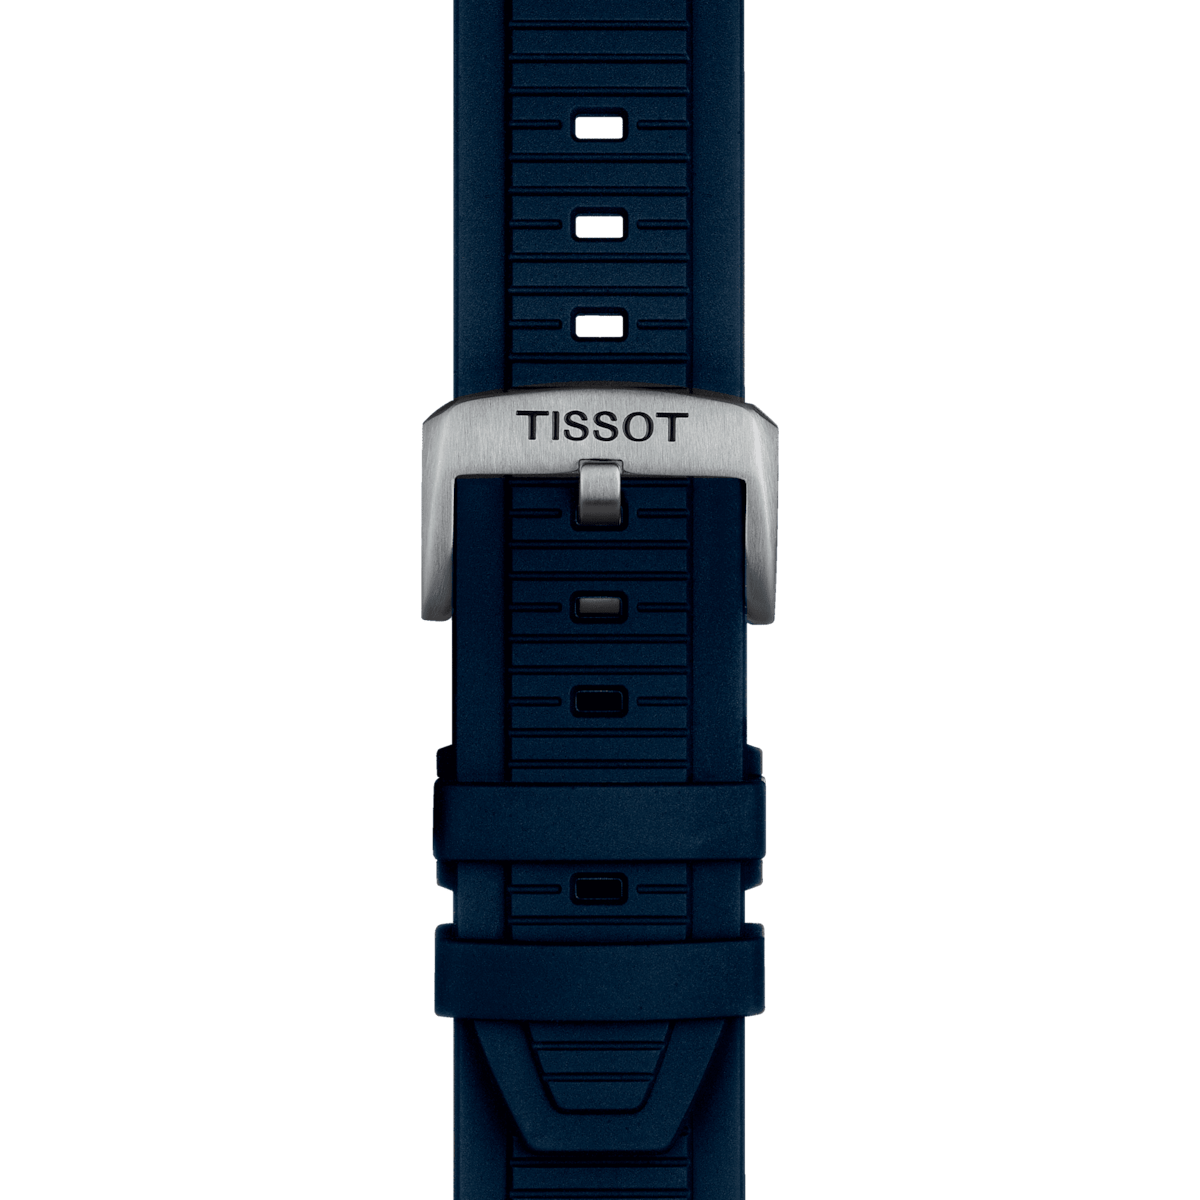 Tissot T-Race MOTOGP Chronograph Limited Edition Men's Watch T1414171704700